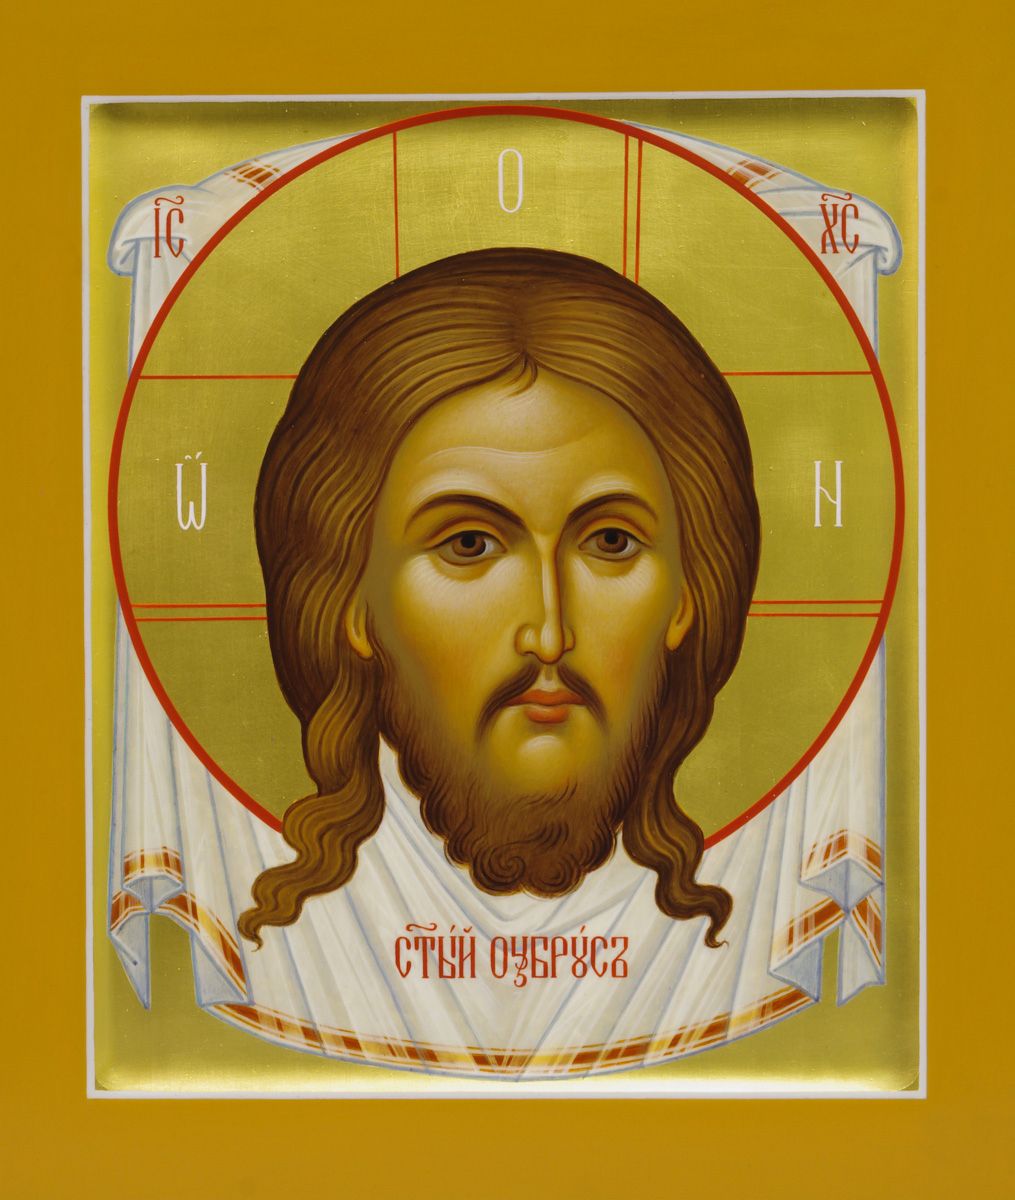 Иверская икона Божьей Матери (Вратарница) — значение, в чем помогает, история образа